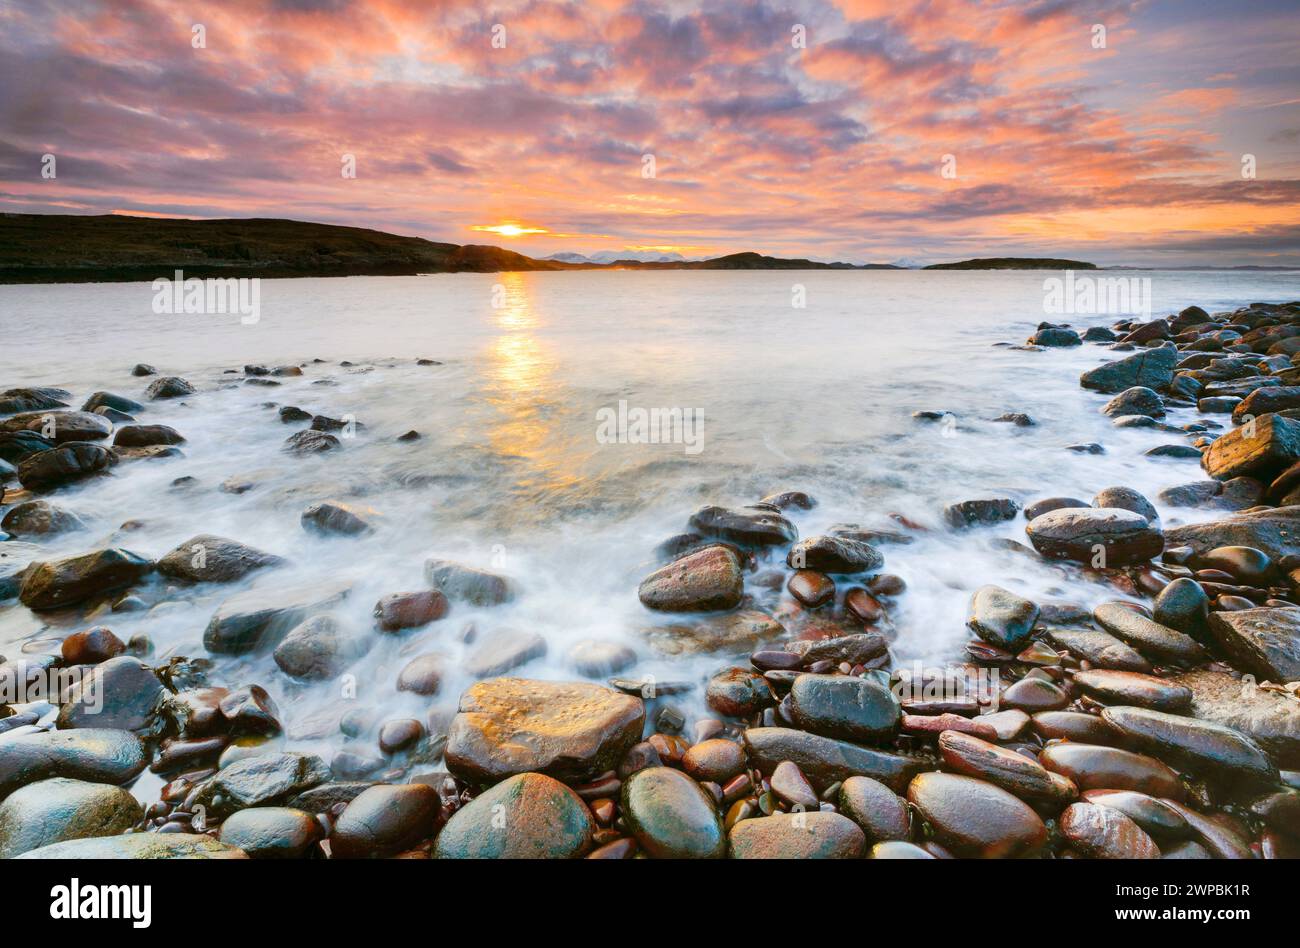 Stimmungsvoller, farbenfroher, bewölkter Himmel bei Sonnenaufgang an einem felsigen Strand in der Nähe von Reiff an der Westküste Schottlands, Großbritanniens, Schottlands, Summer Isles, Reiff Stockfoto